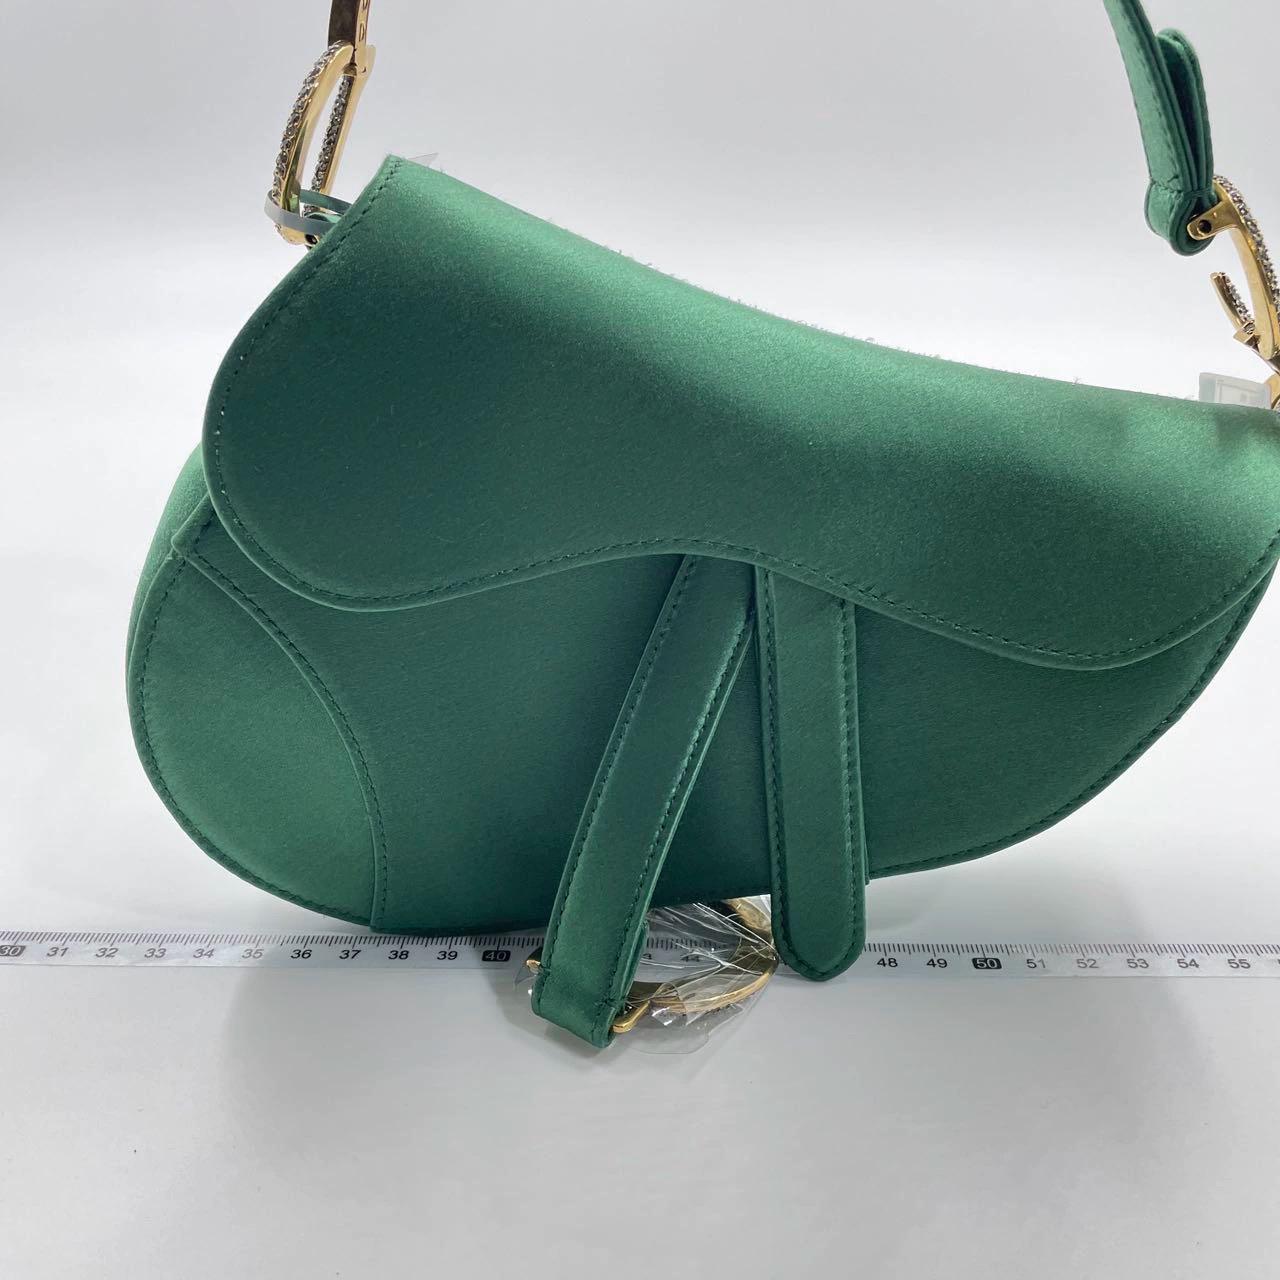 Sac à main Dior, réalisé en satin de soie vert émeraude, ce modèle légendaire est proposé en taille mini, avec un rabat magnétique et une signature CD ornée de cristaux éblouissants de part et d'autre de la lanière. La sacoche peut être portée à la